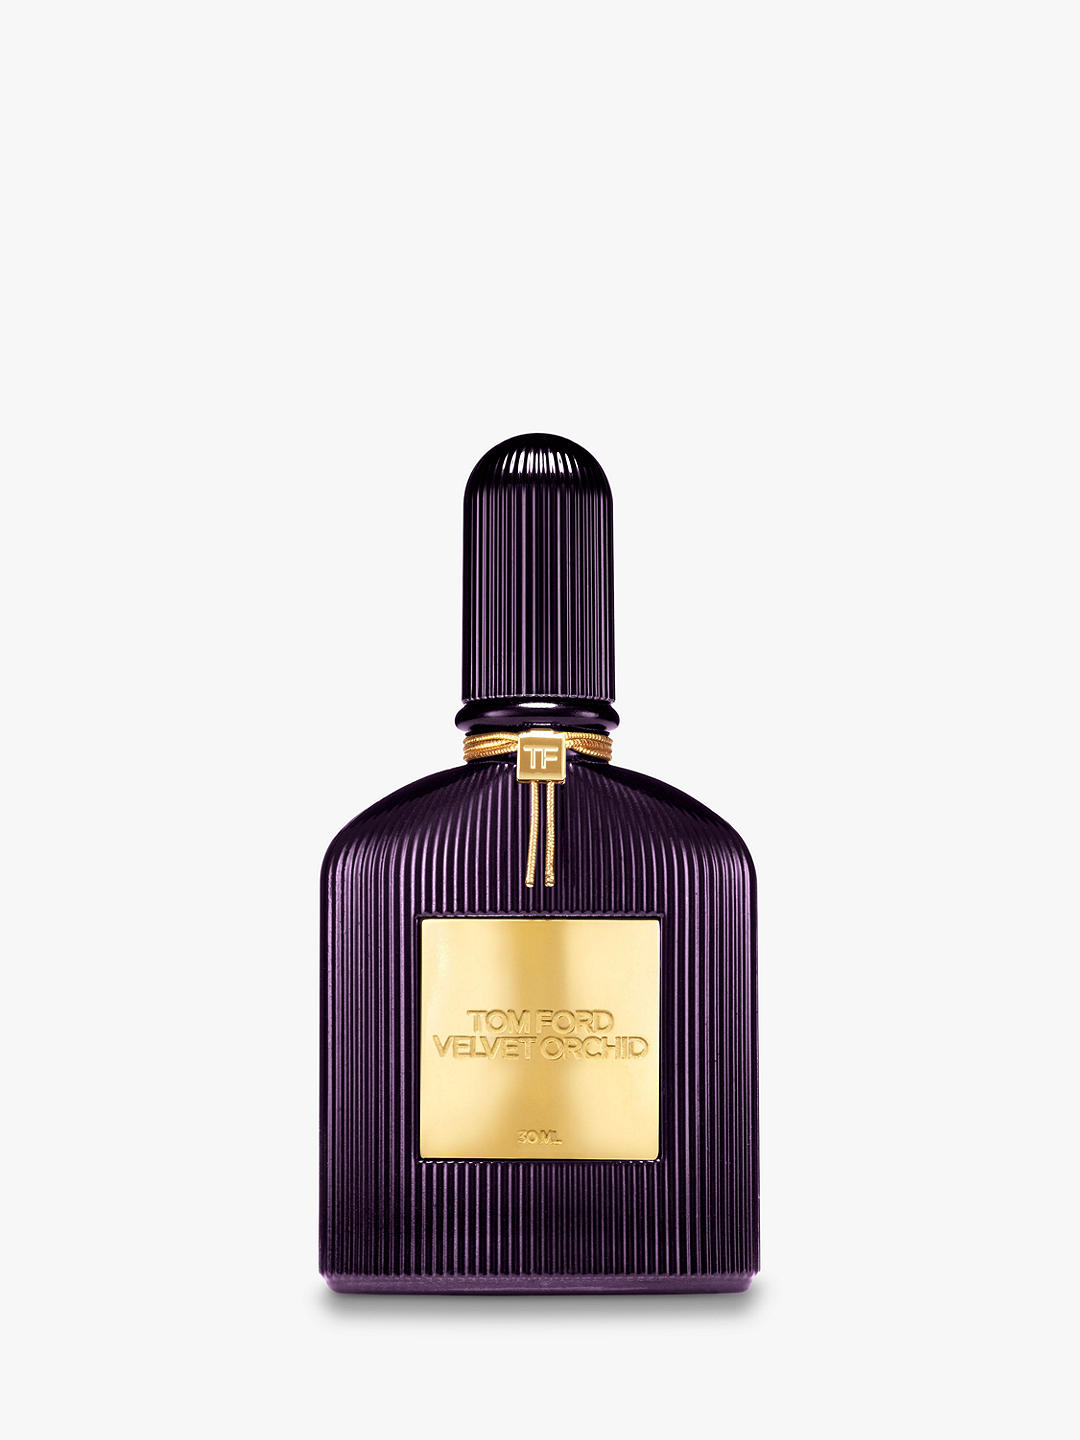 TOM FORD Velvet Orchid Eau de Parfum, 30ml at John Lewis & Partners